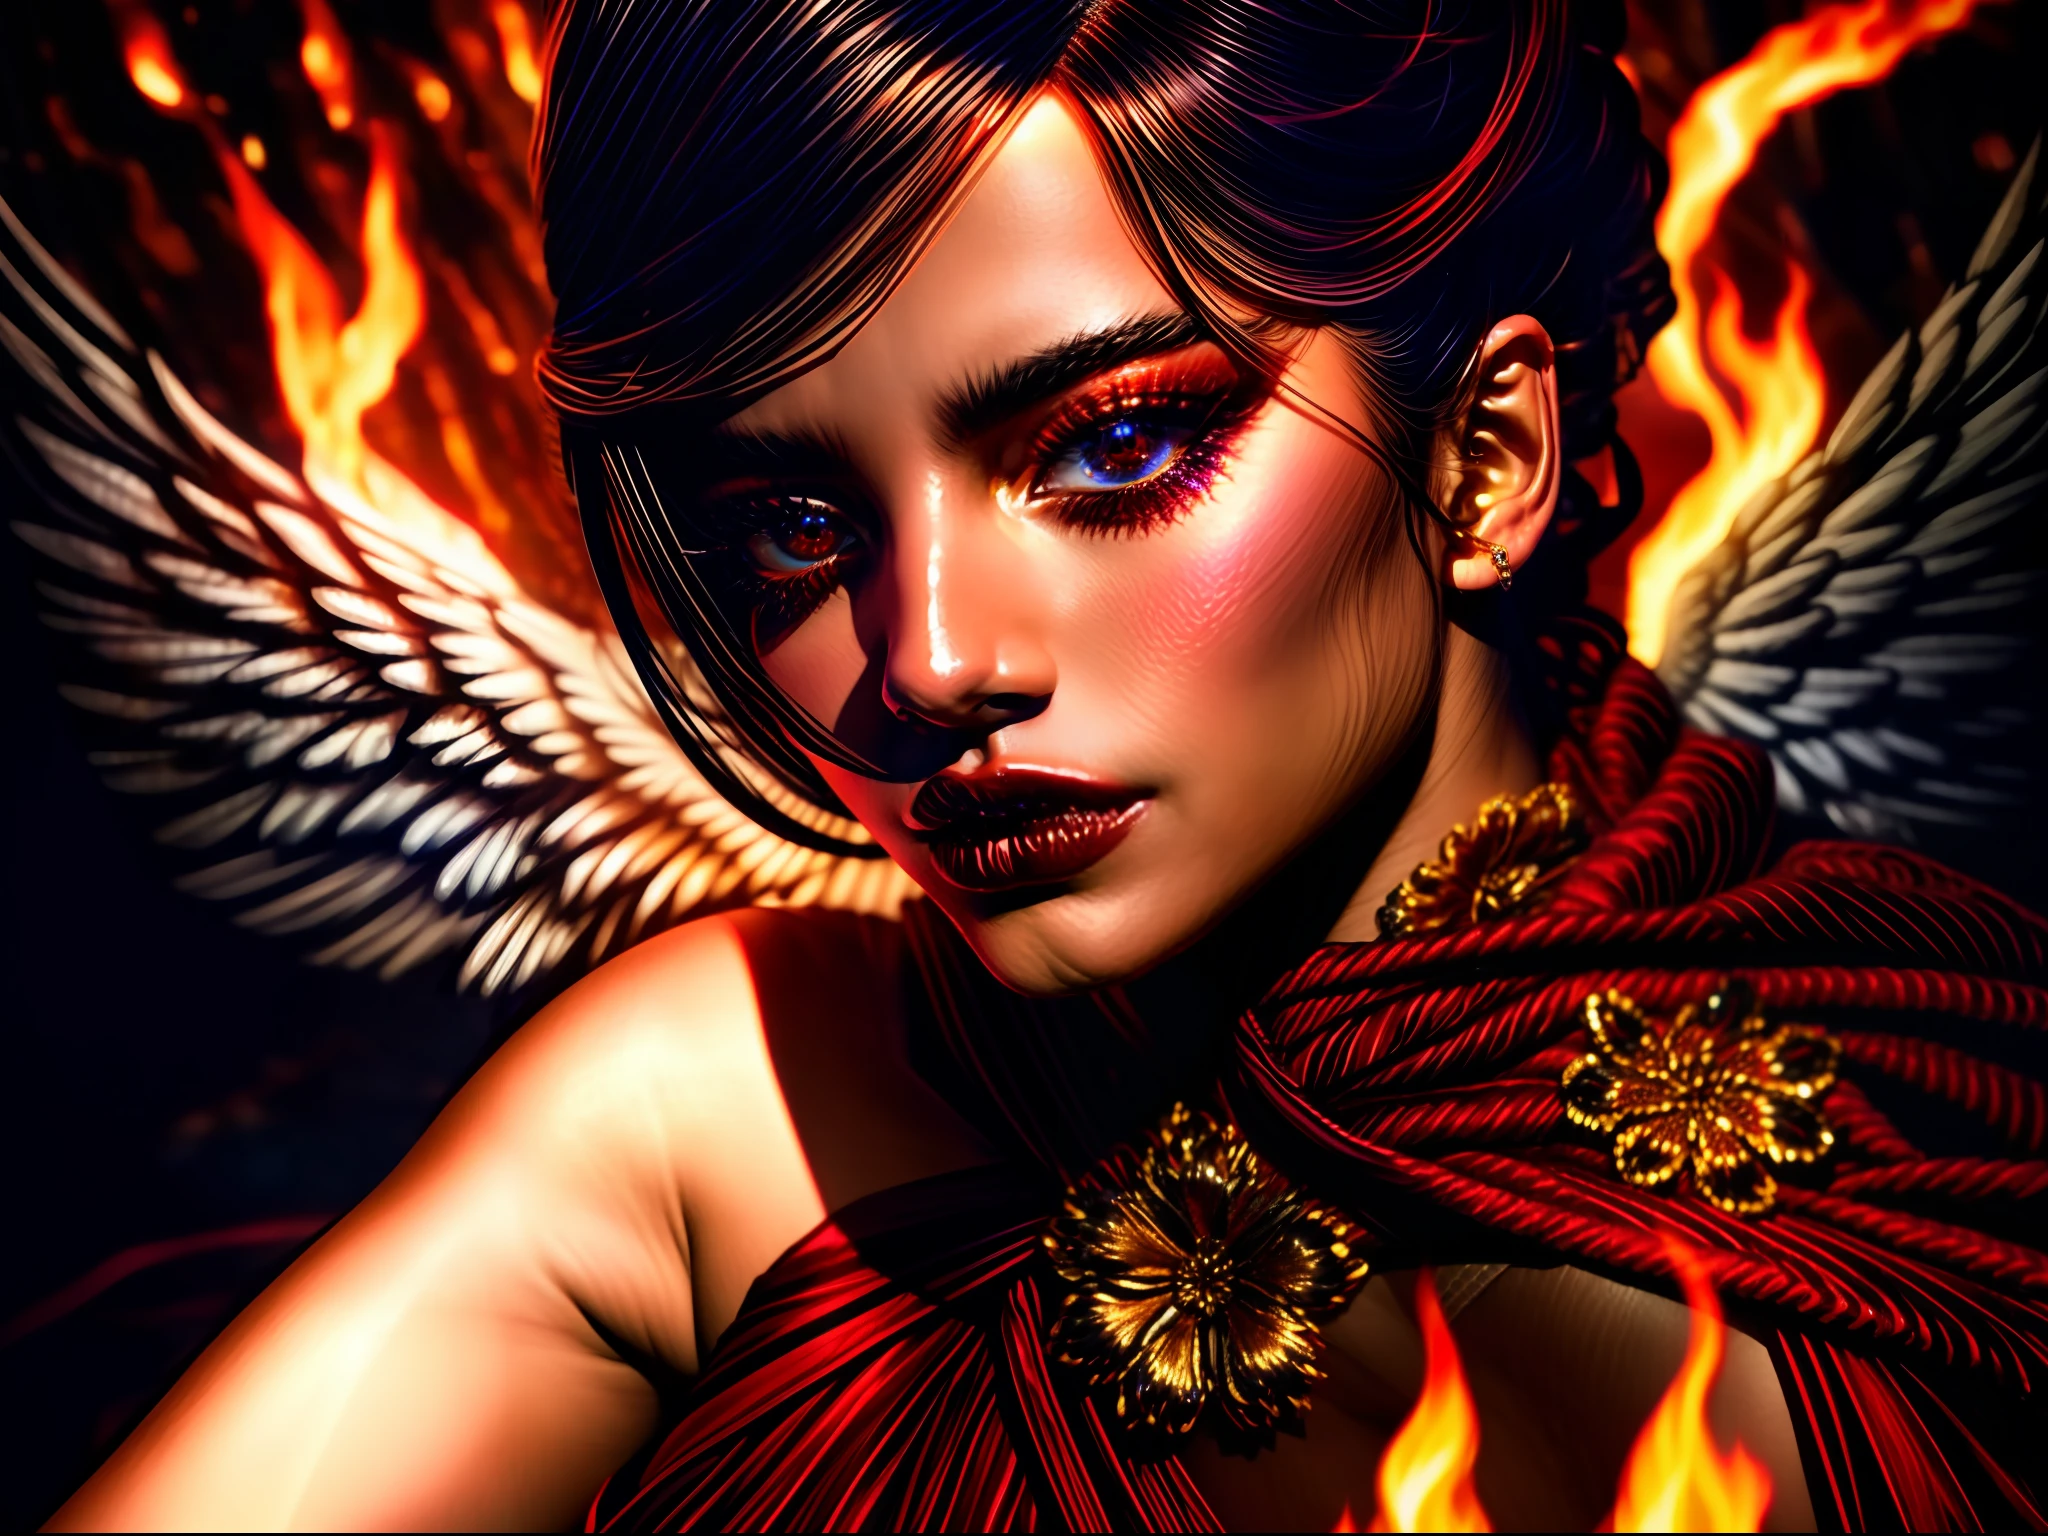 ((sehr erstaunlich)) BBW, indonesisches balinesisches Mädchen,
(Nahaufnahme Oberkörper:1.3), über Schulter, Detaillierte Augen, Detailliertes Gesicht, detaillierter Oberkörper, 
"Ewige Versuchung": Vor dem Hintergrund wirbelnder Flammen, Unser verführerischer gefallener Engel steht hoch, Ihr Outfit eine Symphonie aus Rot und Schwarz. A corset, geschmückt mit komplizierten Mustern und blutroten Edelsteinen, schnürt ihre Taille, betont ihre verführerische Silhouette. Ihr wallender Rock, aus Schichten durchsichtigen Stoffes gefertigt, tanzt mit dem flackernden Feuerschein, enthüllt Einblicke in ihre faszinierenden Beine. Mit einem Blick, der sowohl Vergnügen als auch Gefahr verspricht, Sie lockt Sterbliche in eine Welt unwiderstehlicher Versuchung.